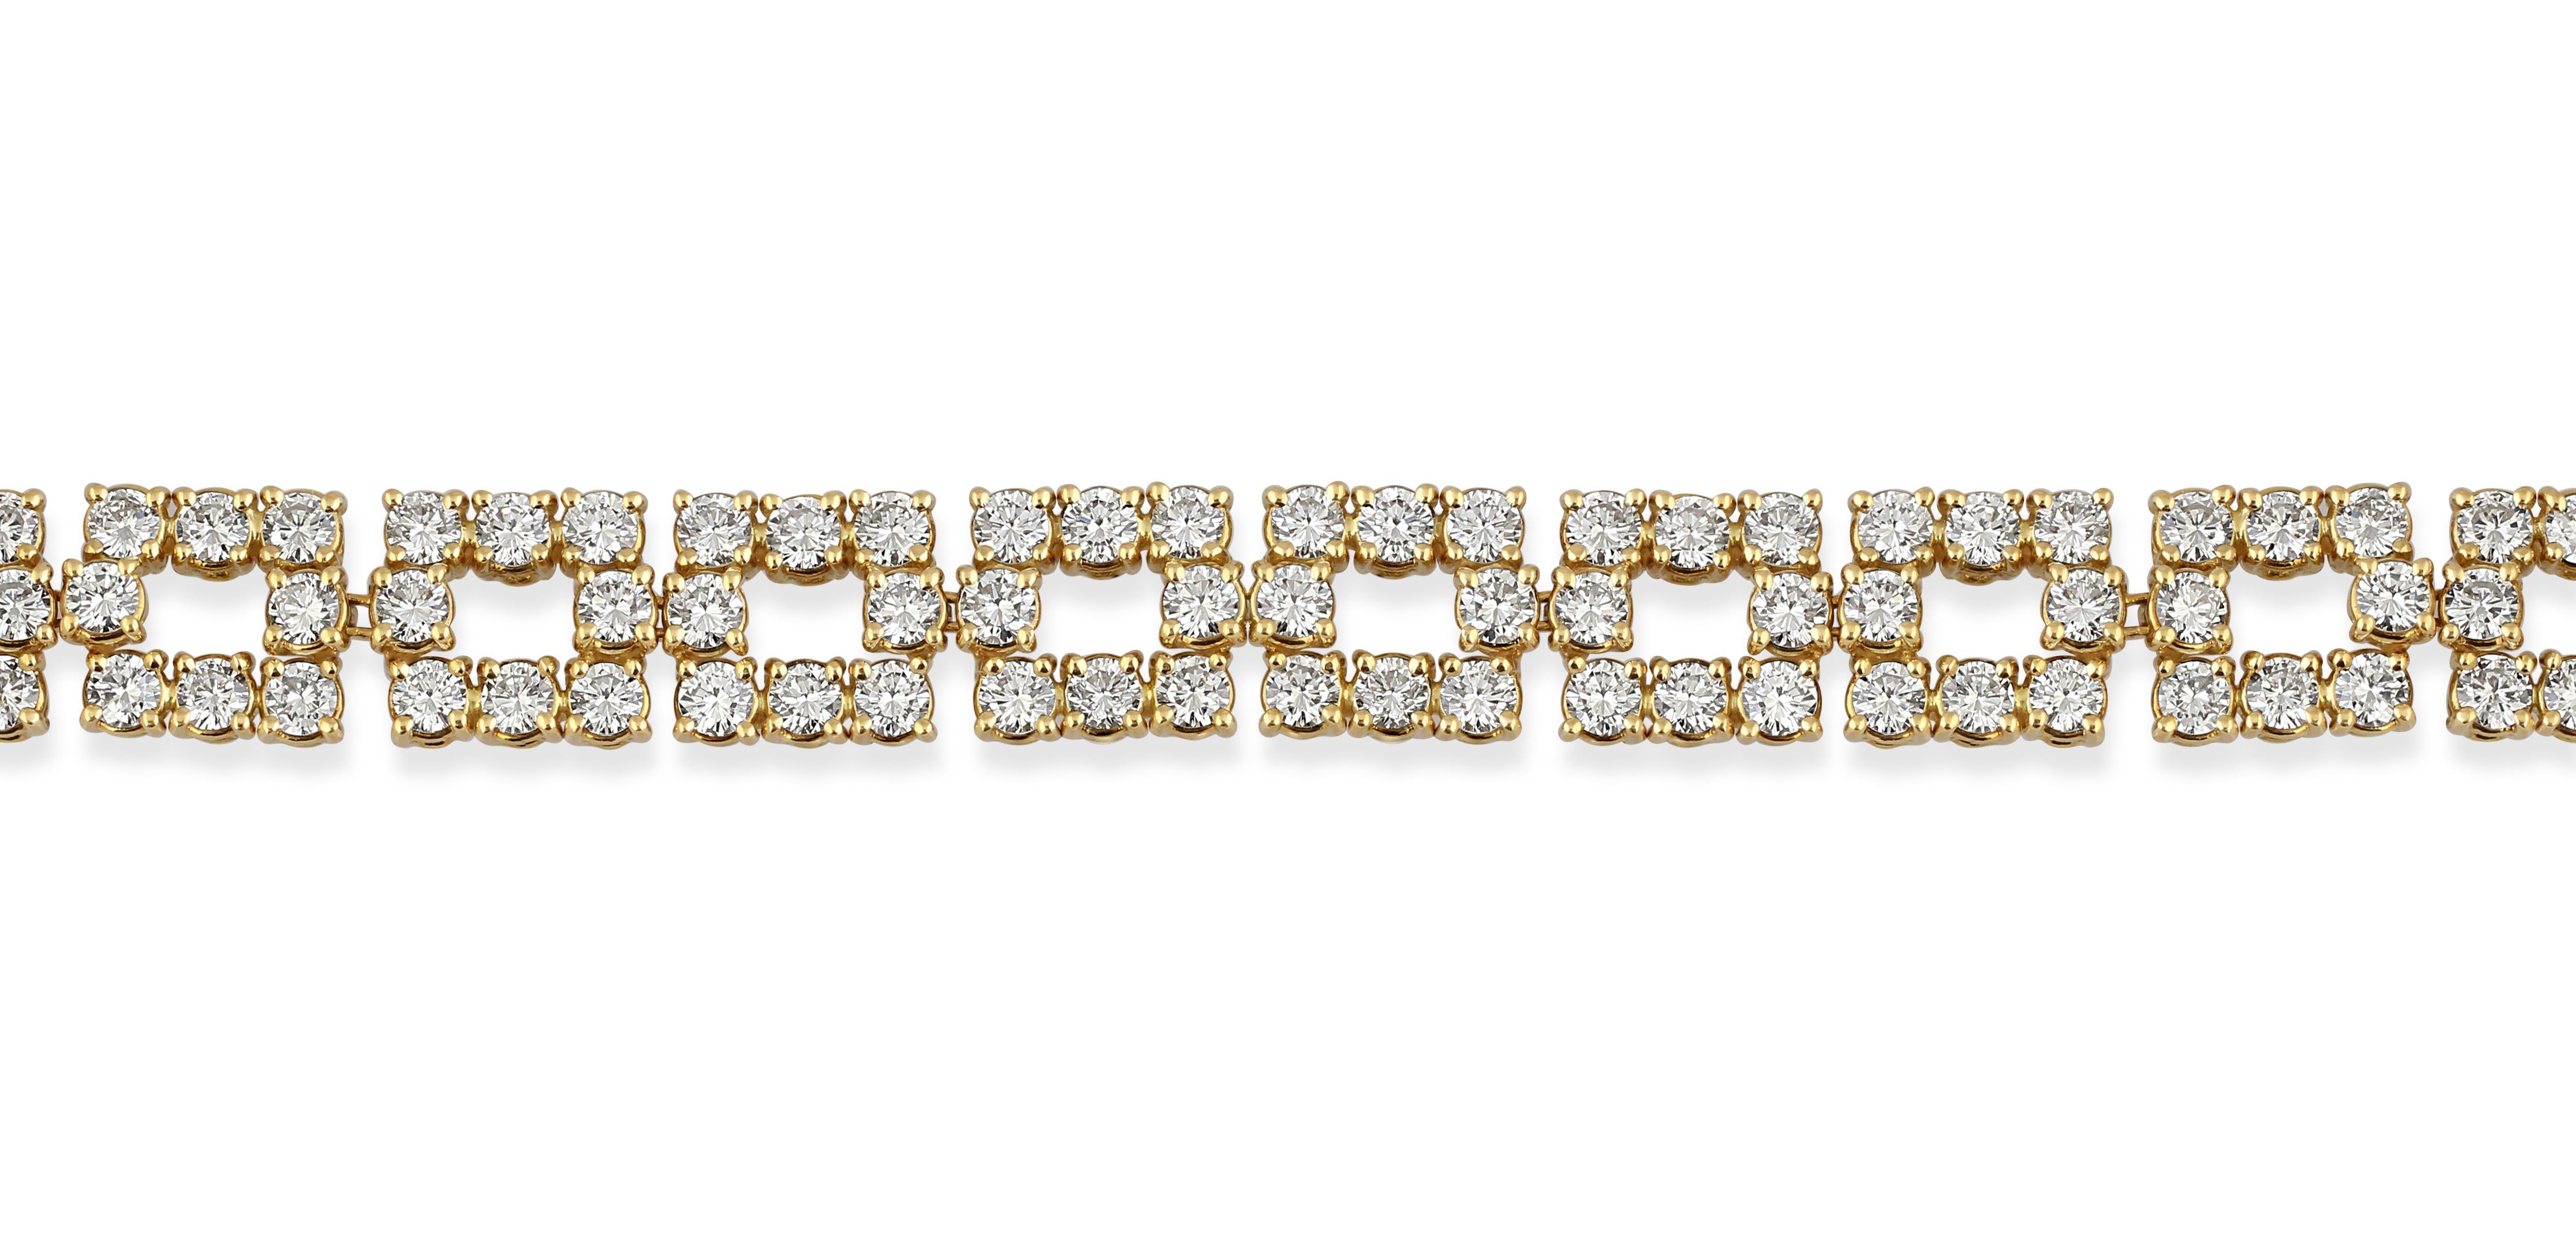 Collier en or 18k et diamants, serti de 20,00cts de diamants taillés en brillant.

Longueur : 40,5 cm
Poids : 56gr
